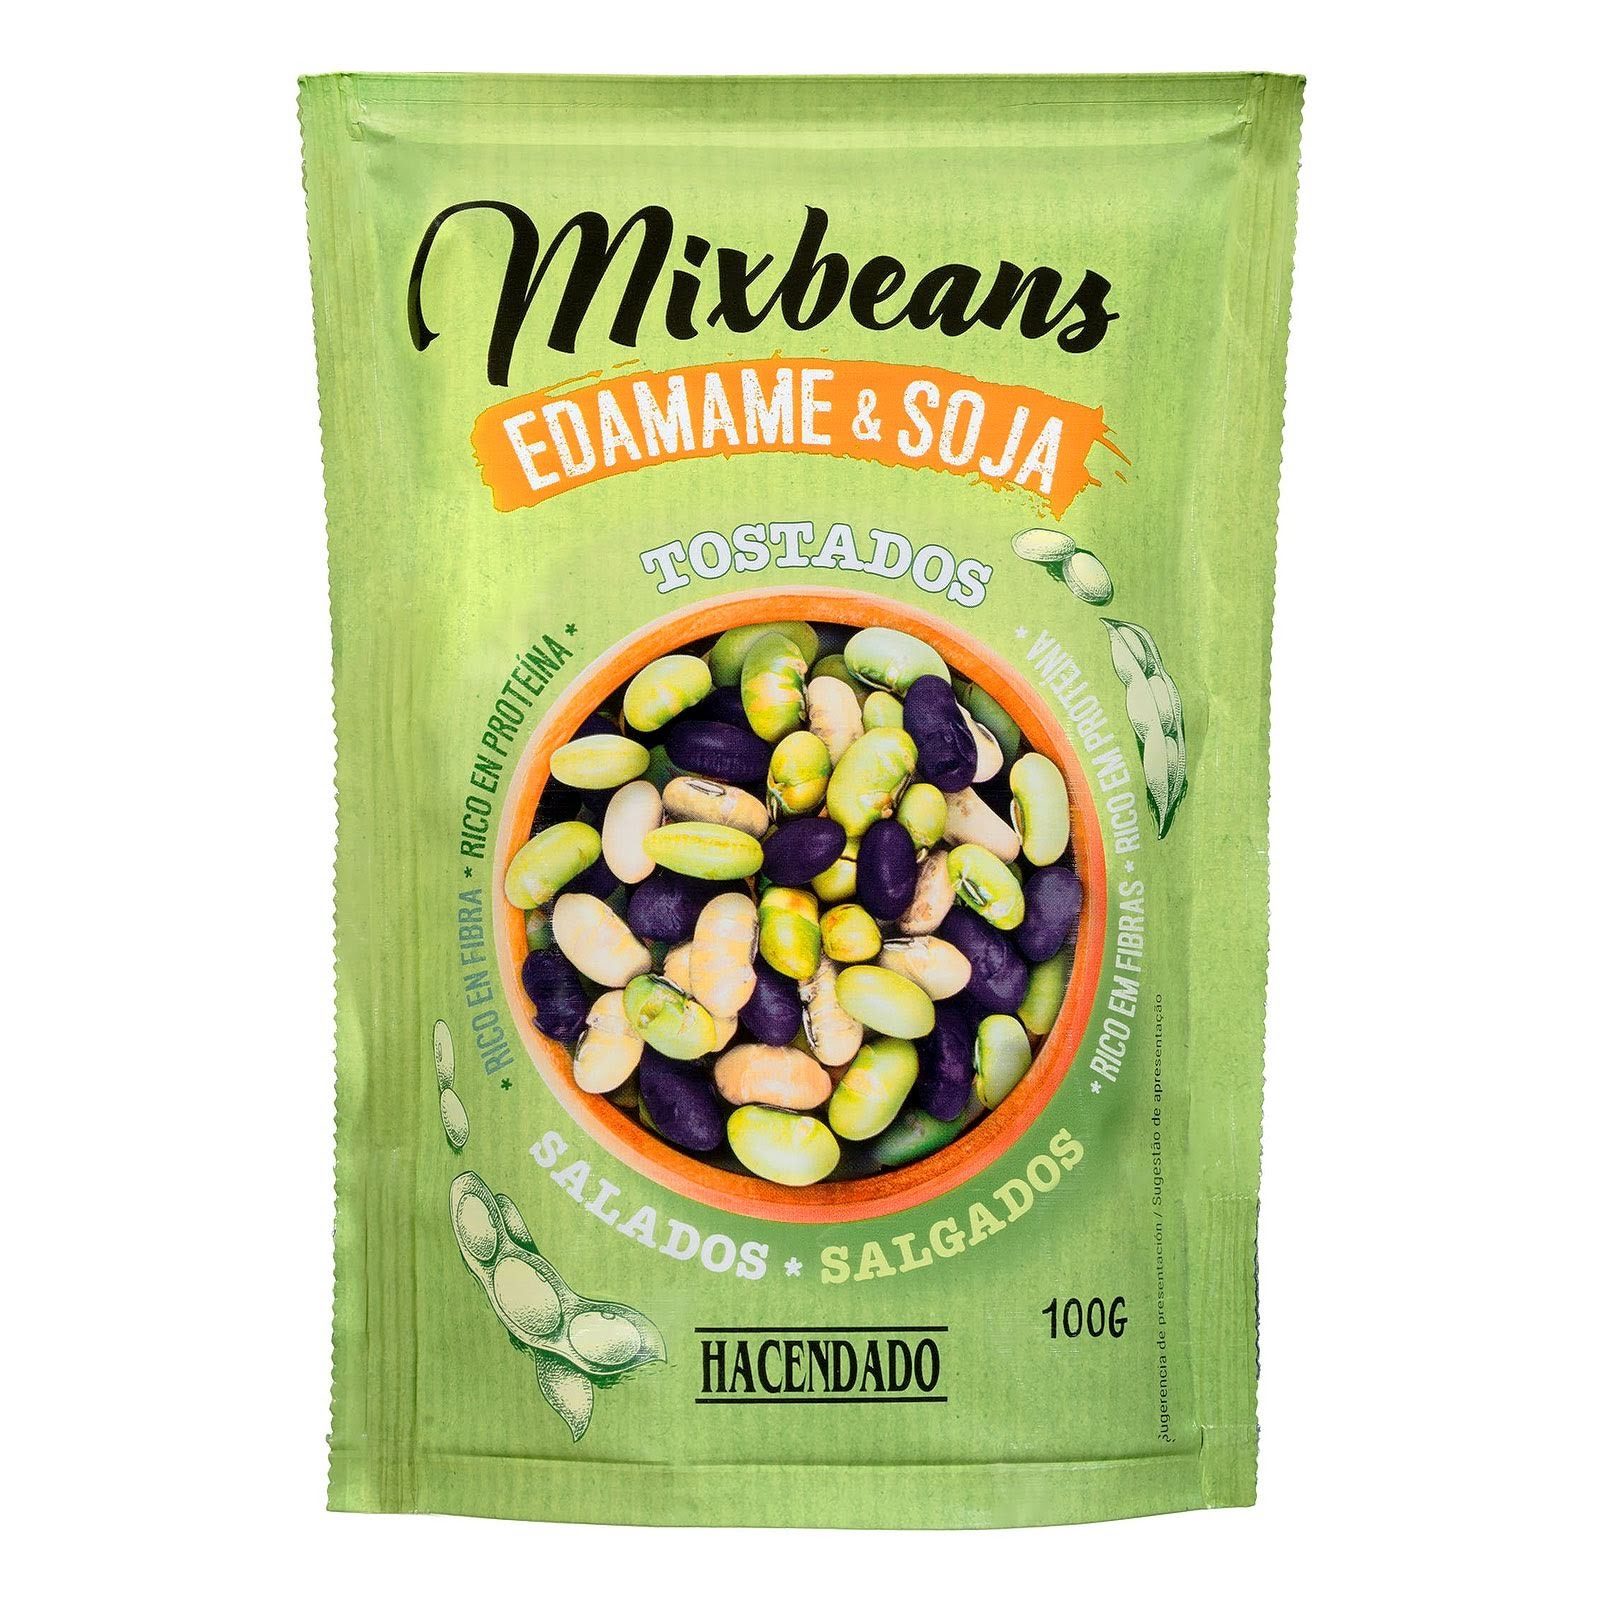 mixbeans-edamame-y-soja-tostados-y-salados-hacendado-mercadona-1-6053322